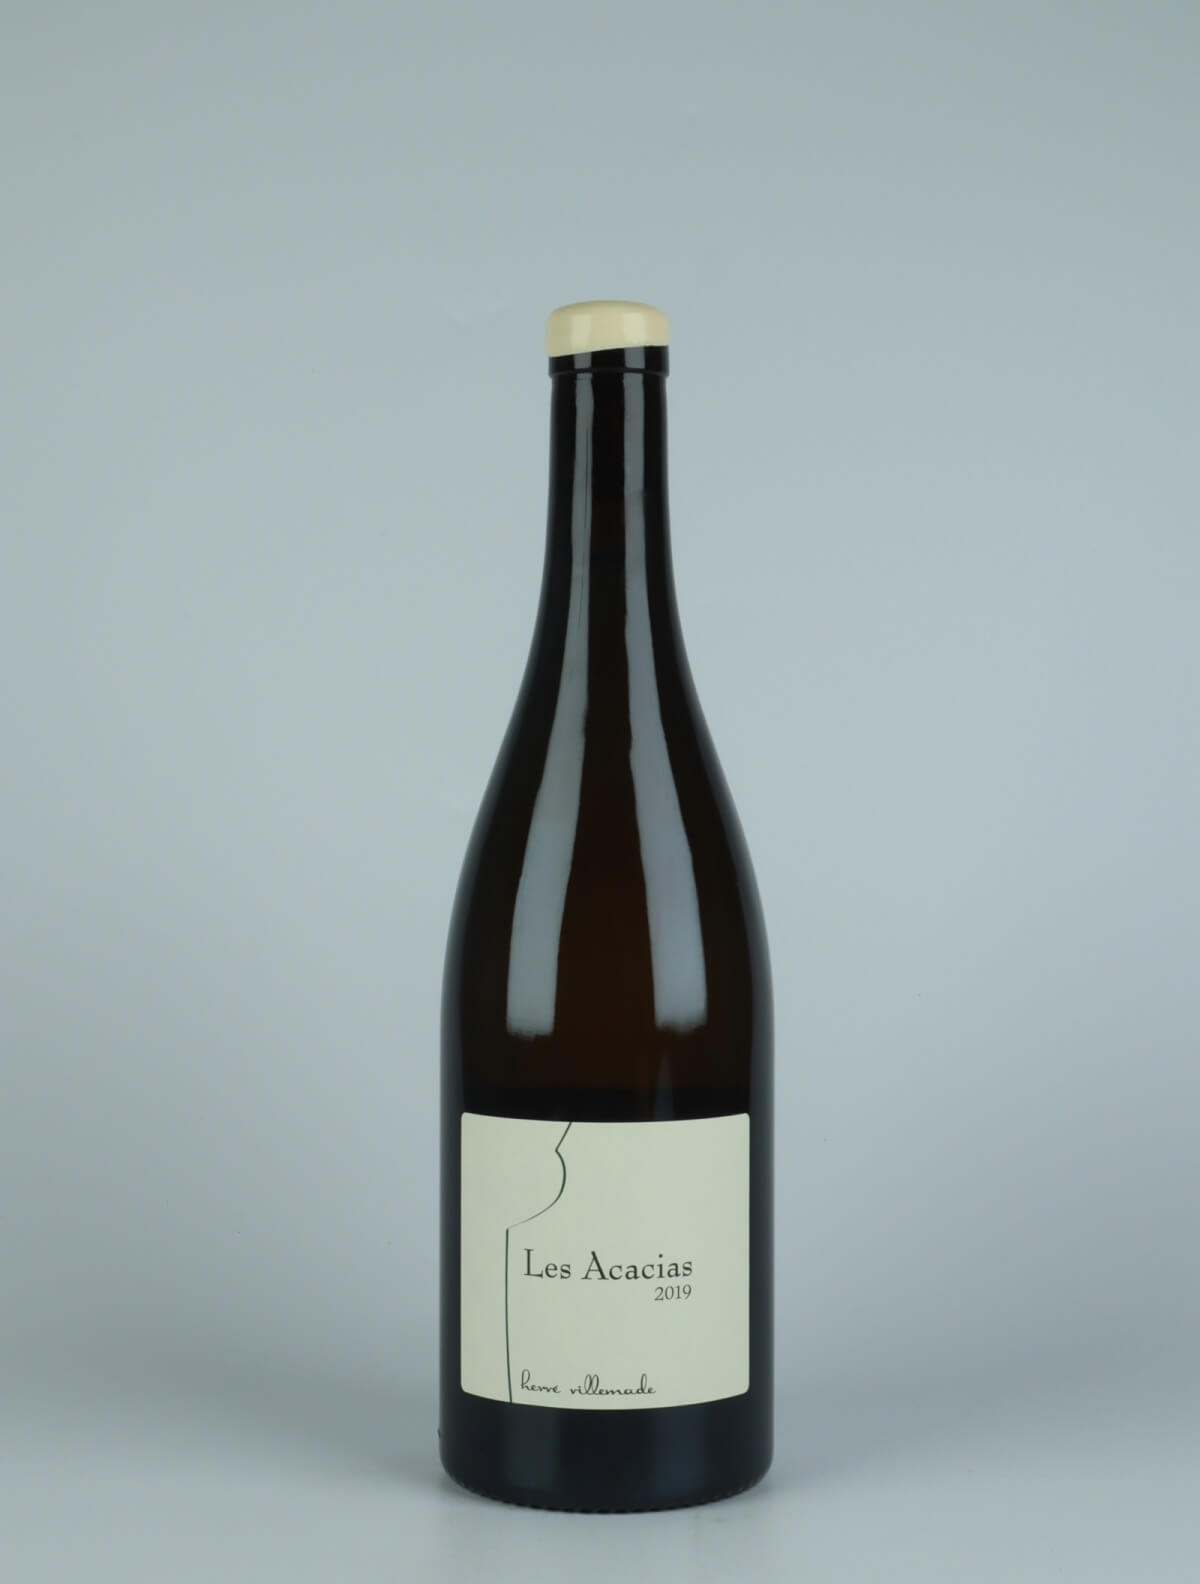 En flaske 2019 Les Acacias Hvidvin fra Hervé Villemade, Loire i Frankrig